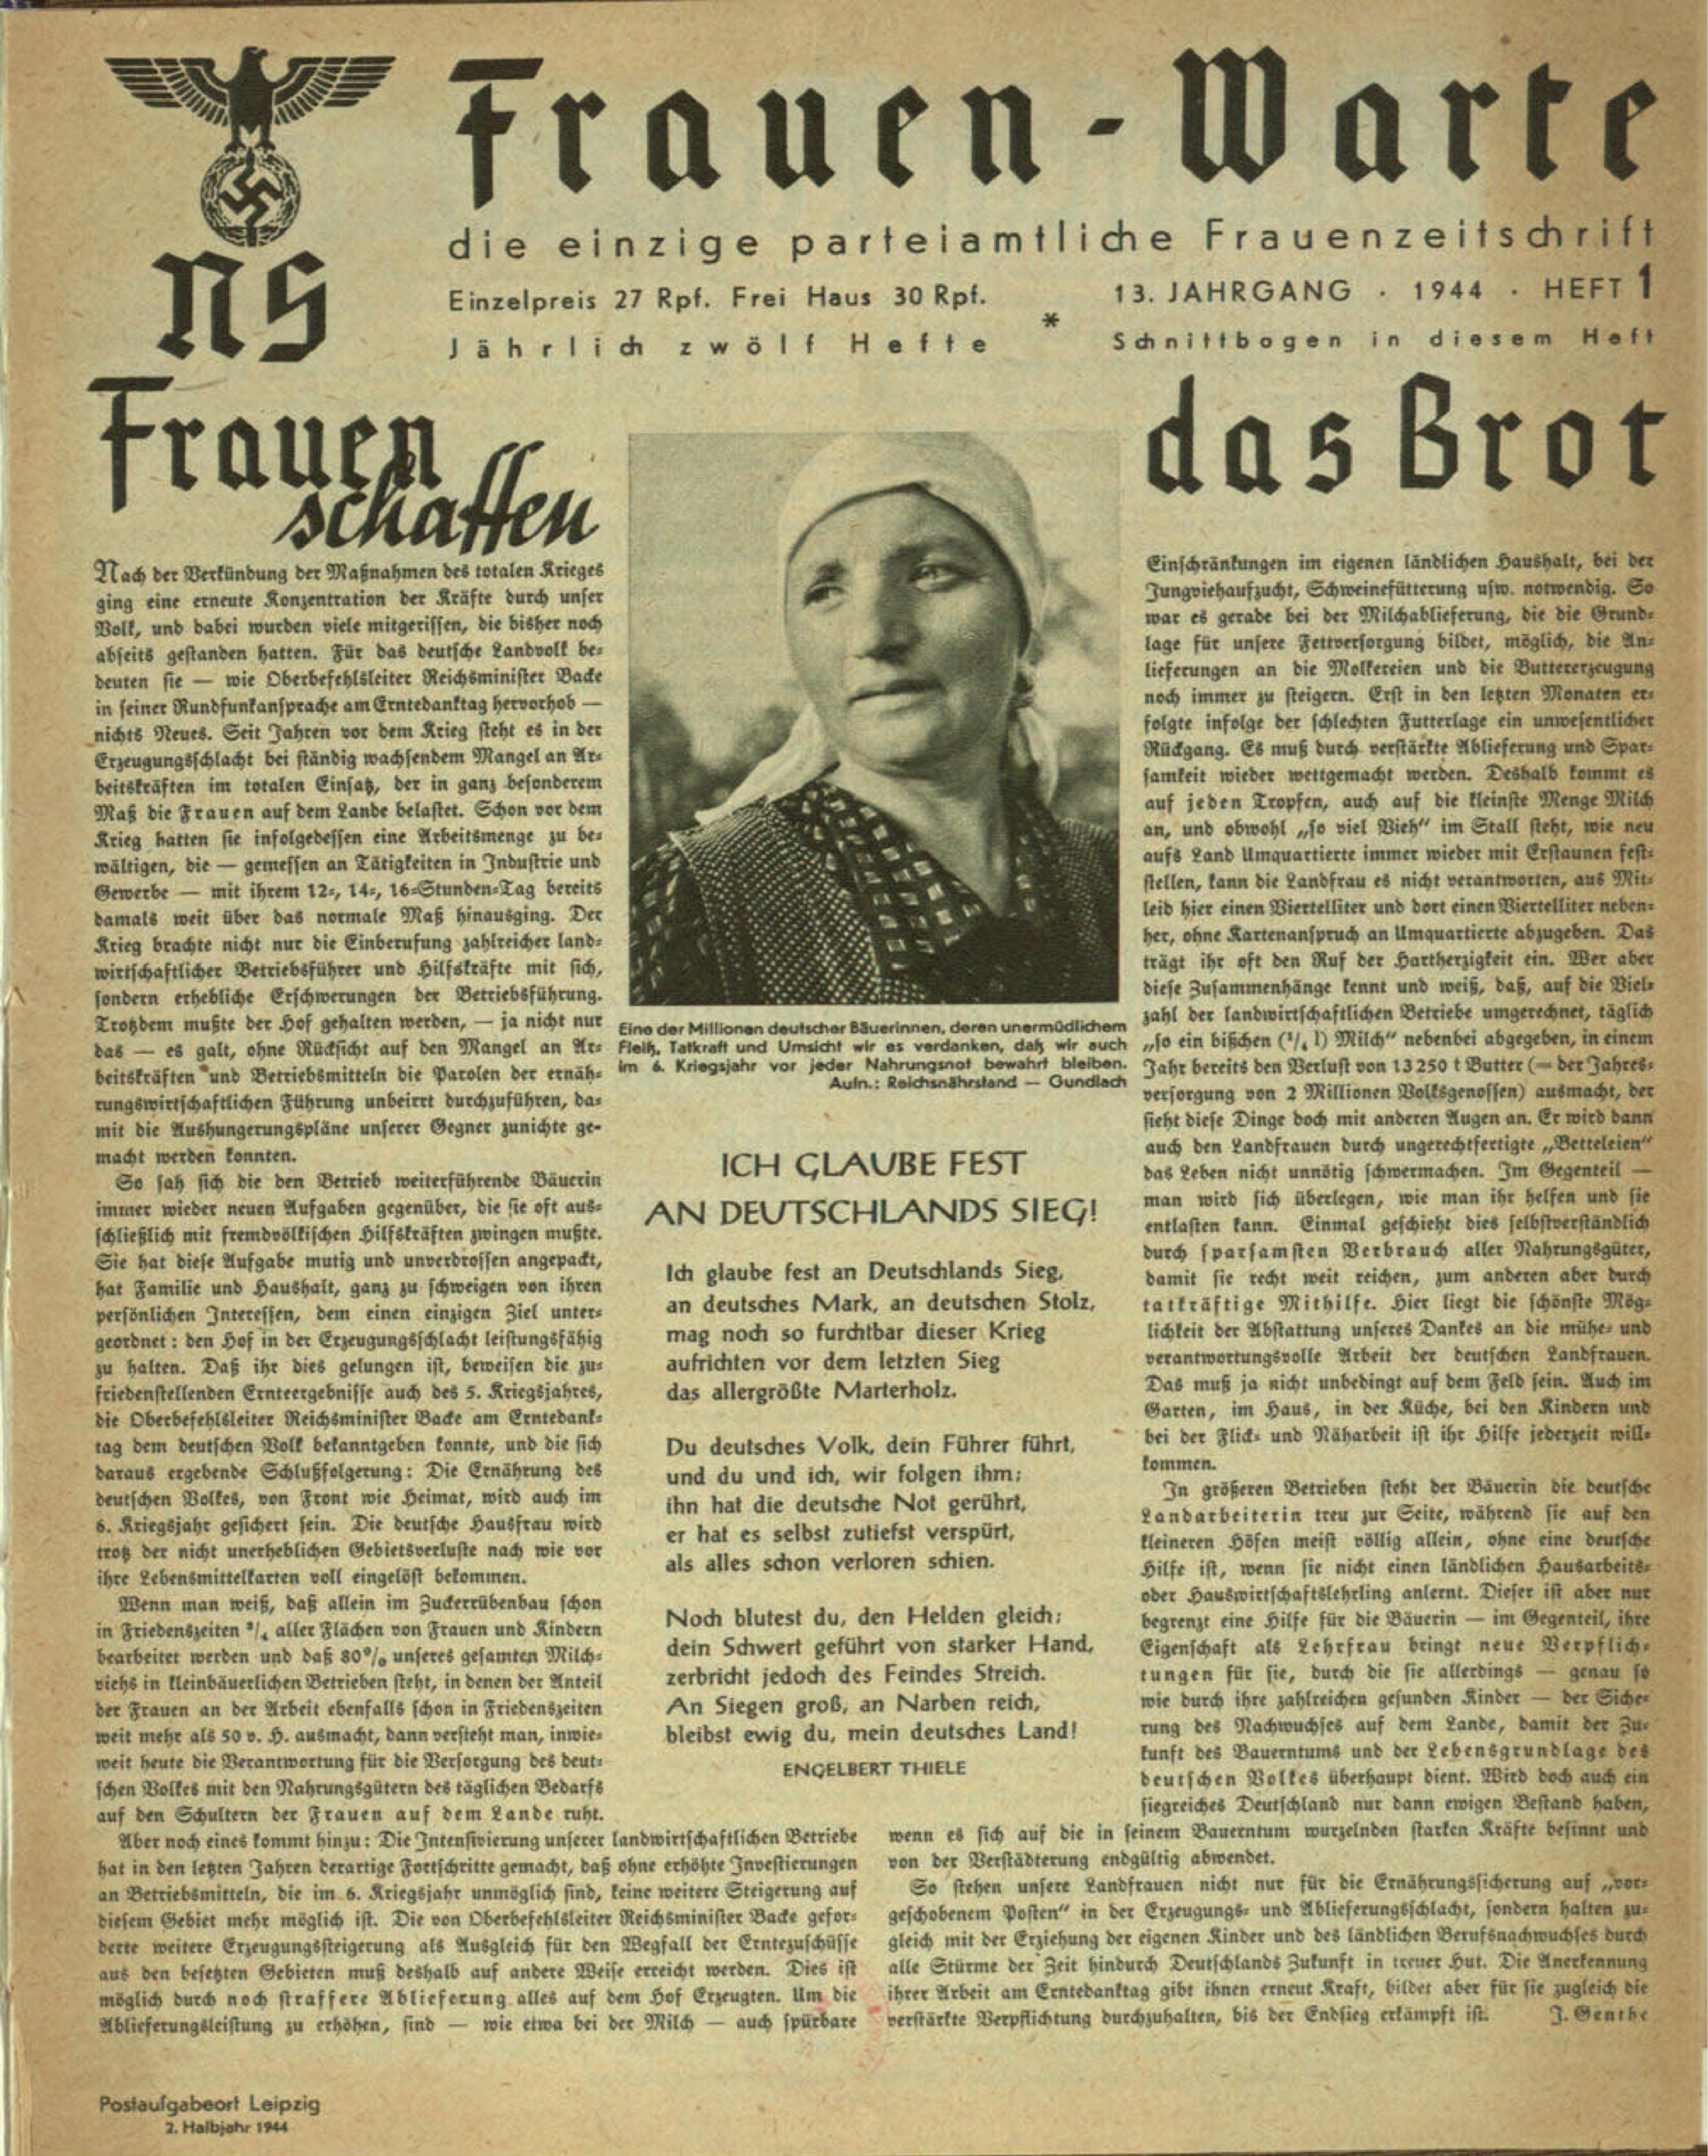 Frauen-Warte 13. Jahrgang Heft 01 (1944, 12 S., Scan, Fraktur)